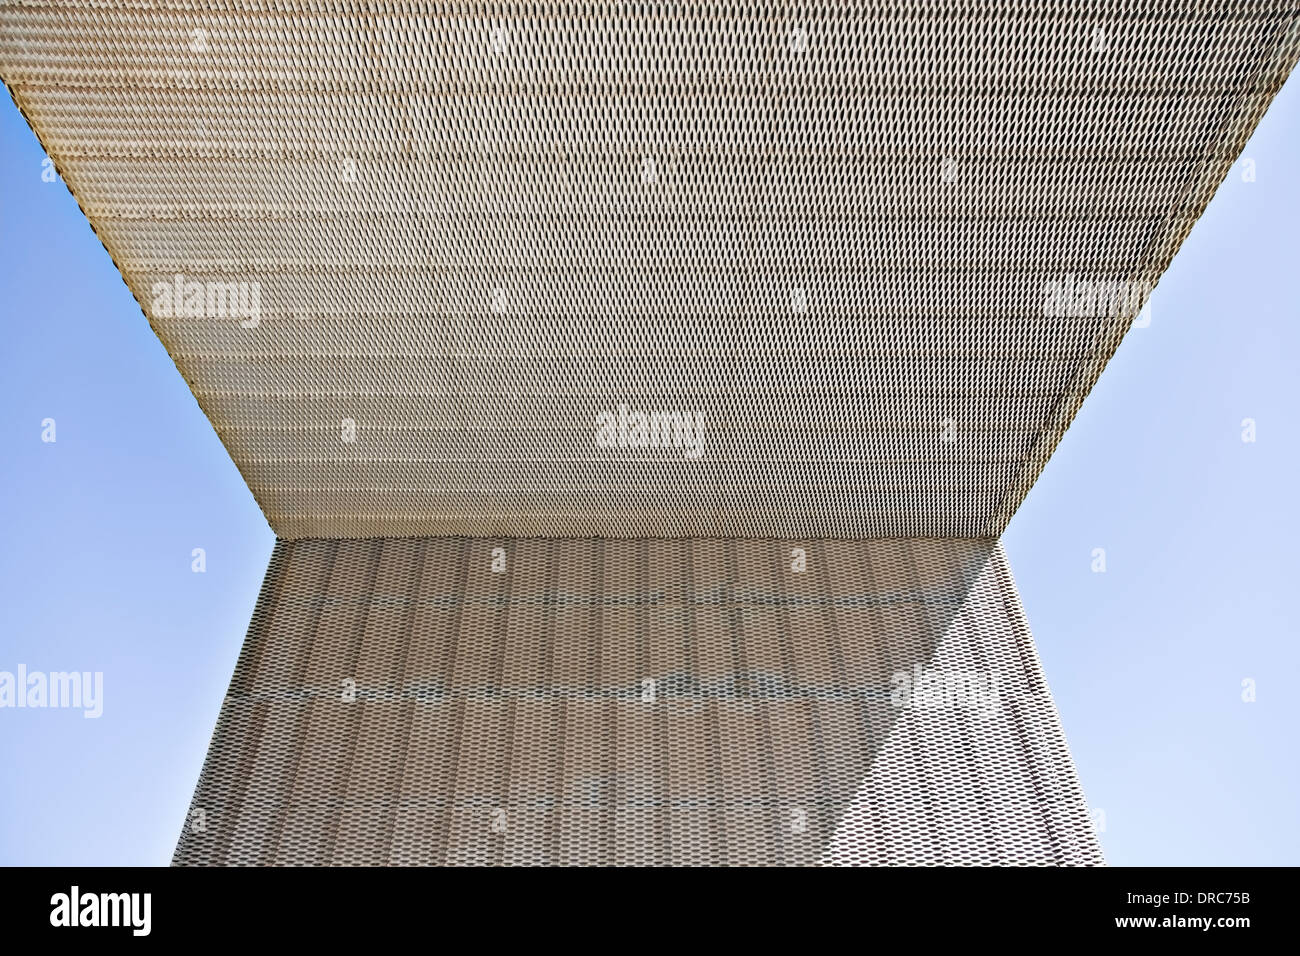 Sonnenlicht und Schatten auf moderne Gebäude Stockfoto